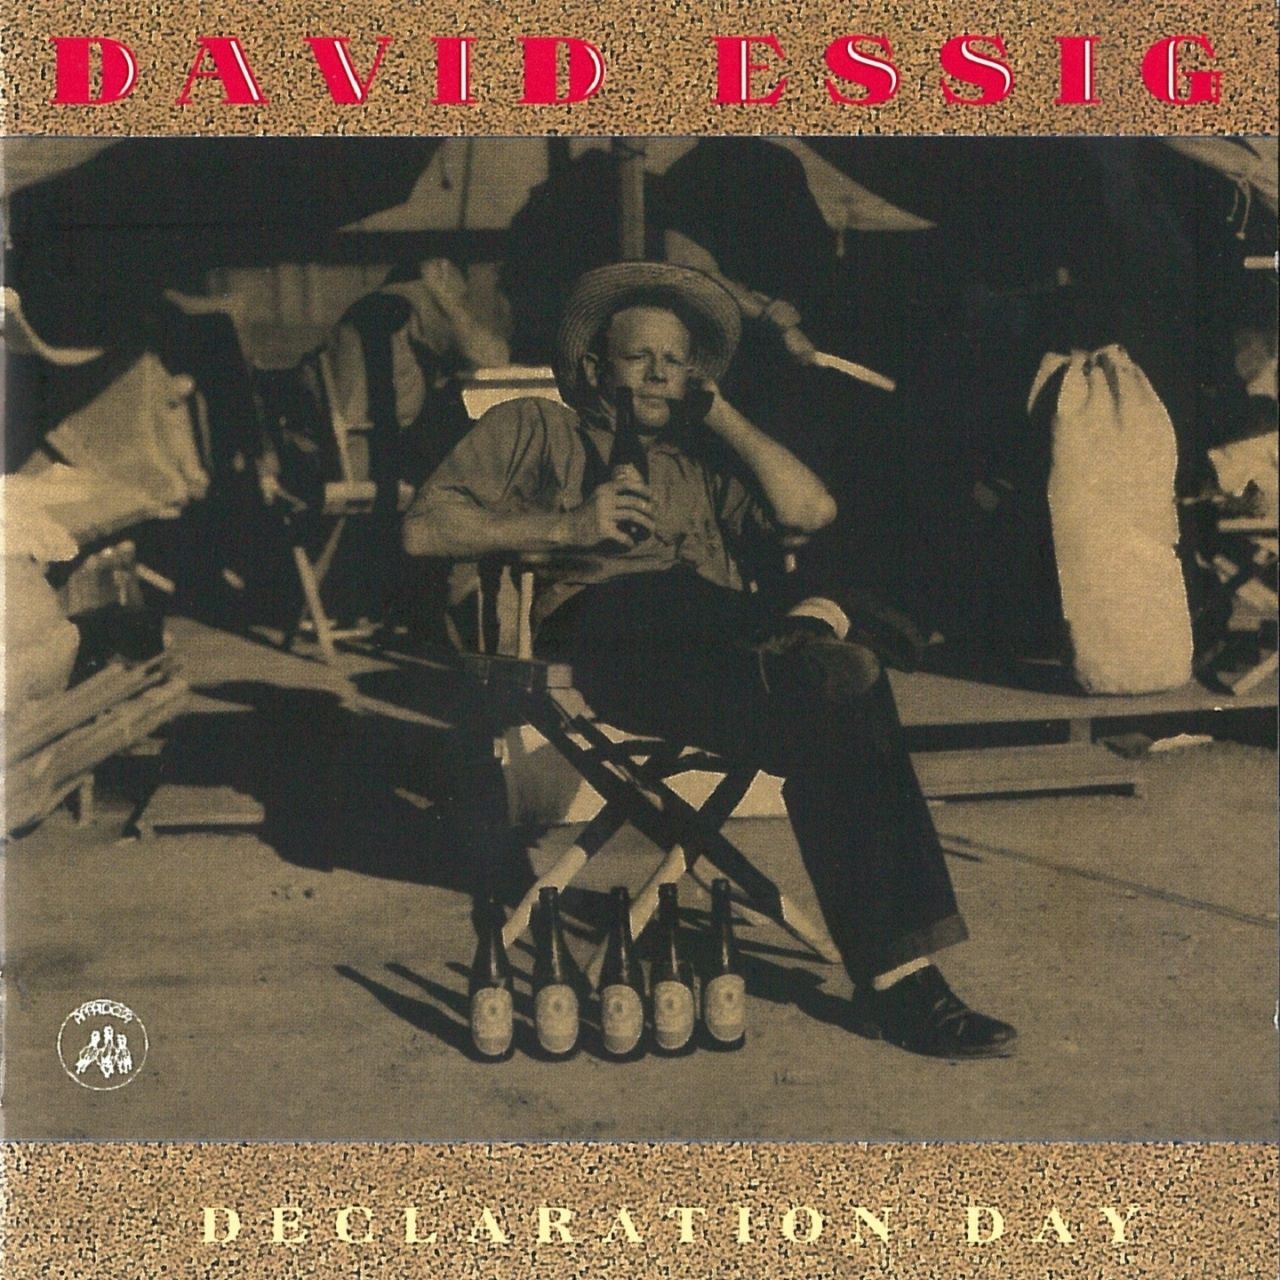 David Essig – Declaration Day cover album